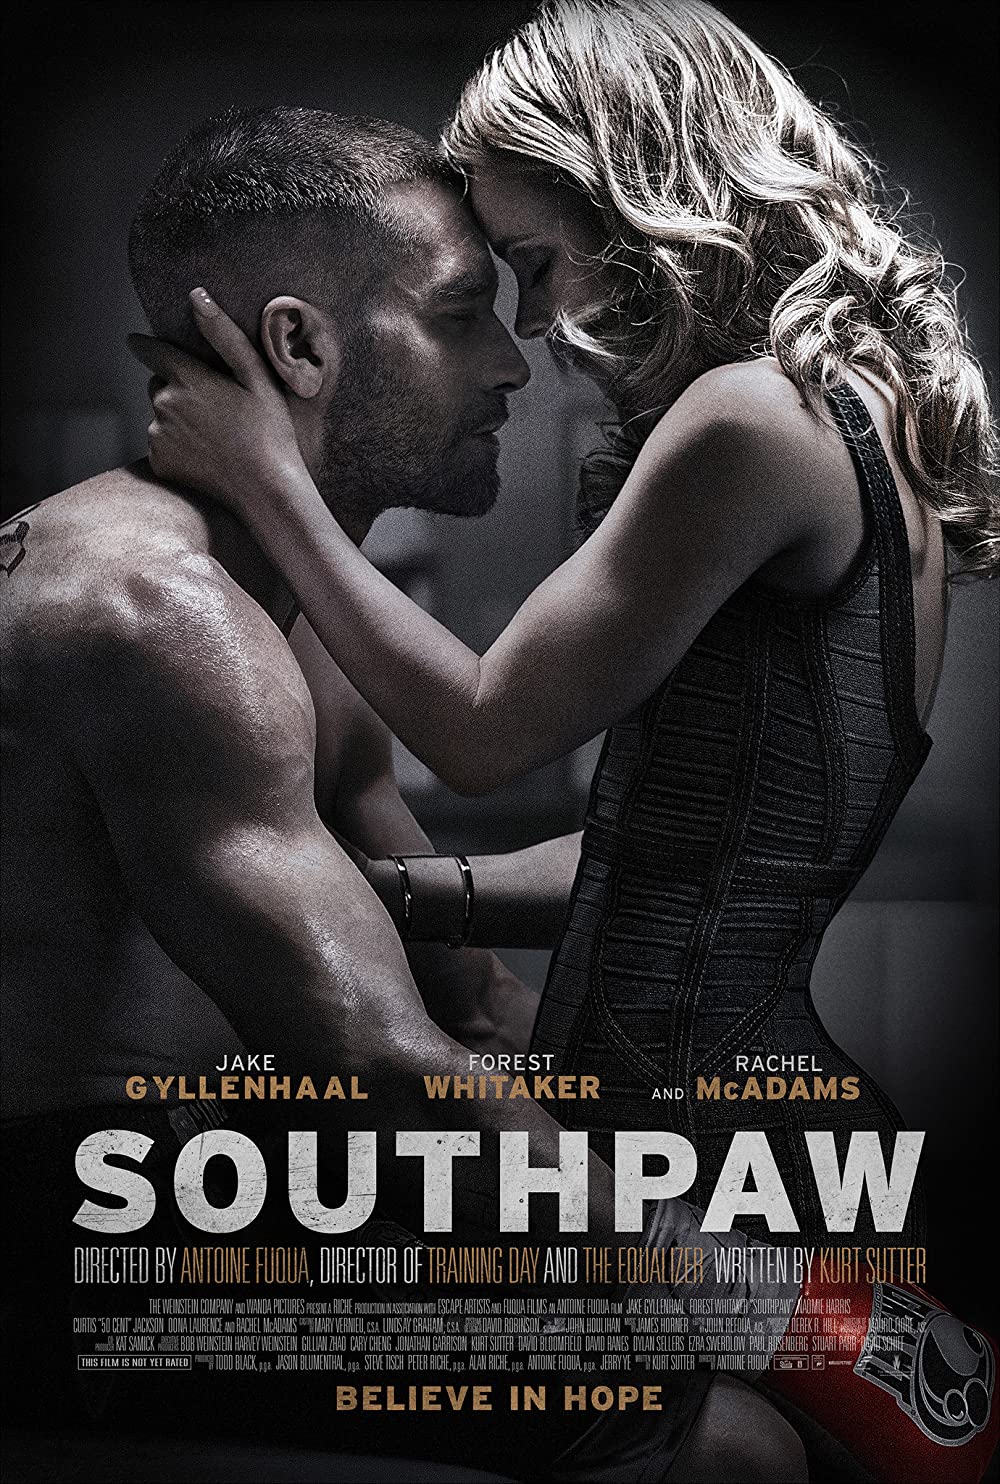 ดูหนัง Southpaw (2015) เซาท์พาว สังเวียนเดือด [Full-HD]